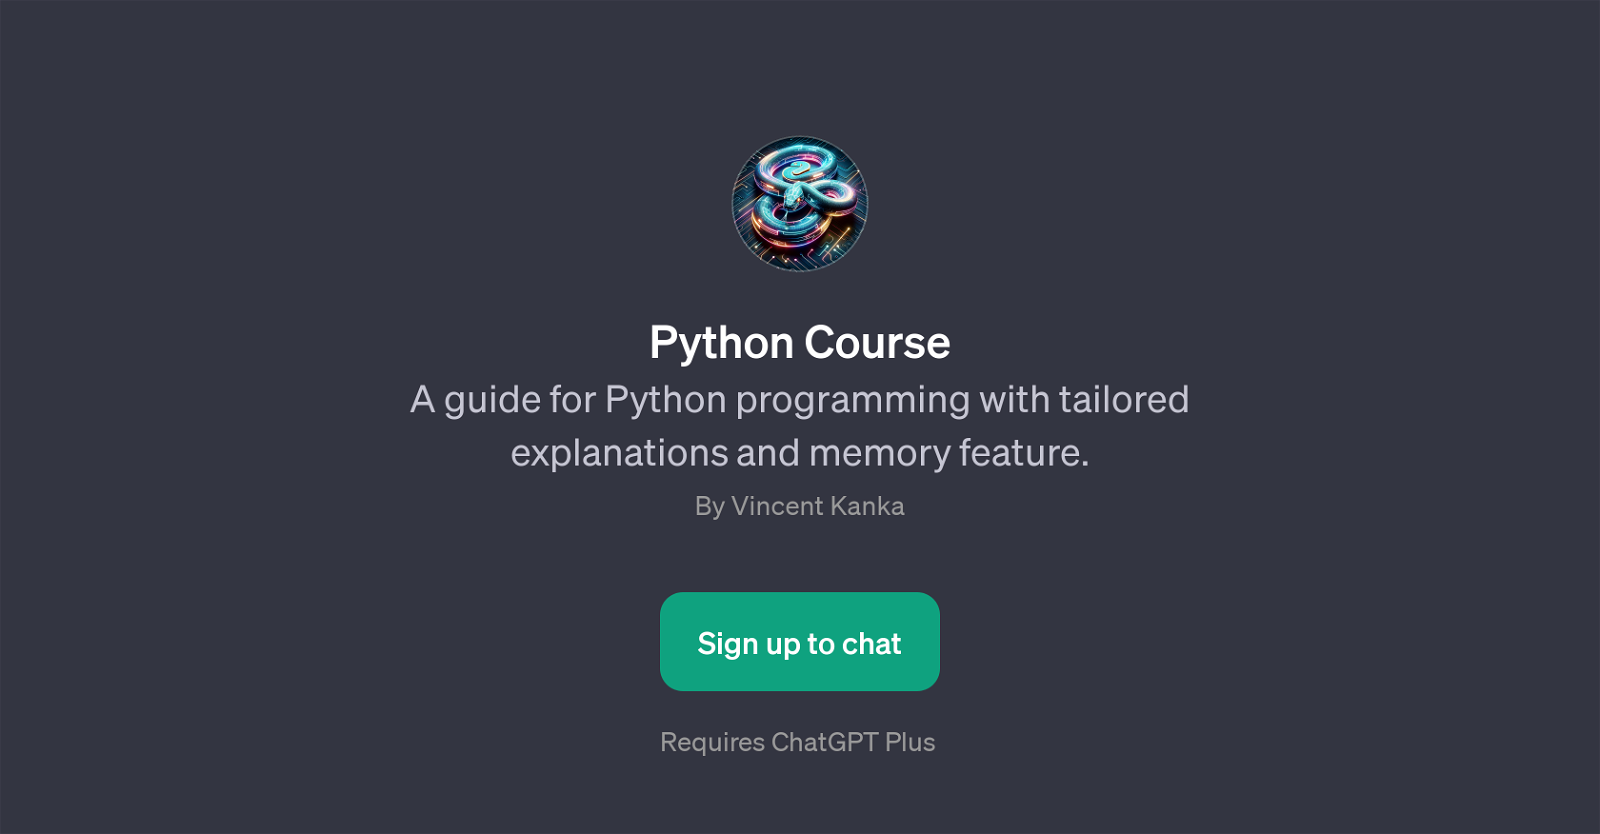 Python Course website